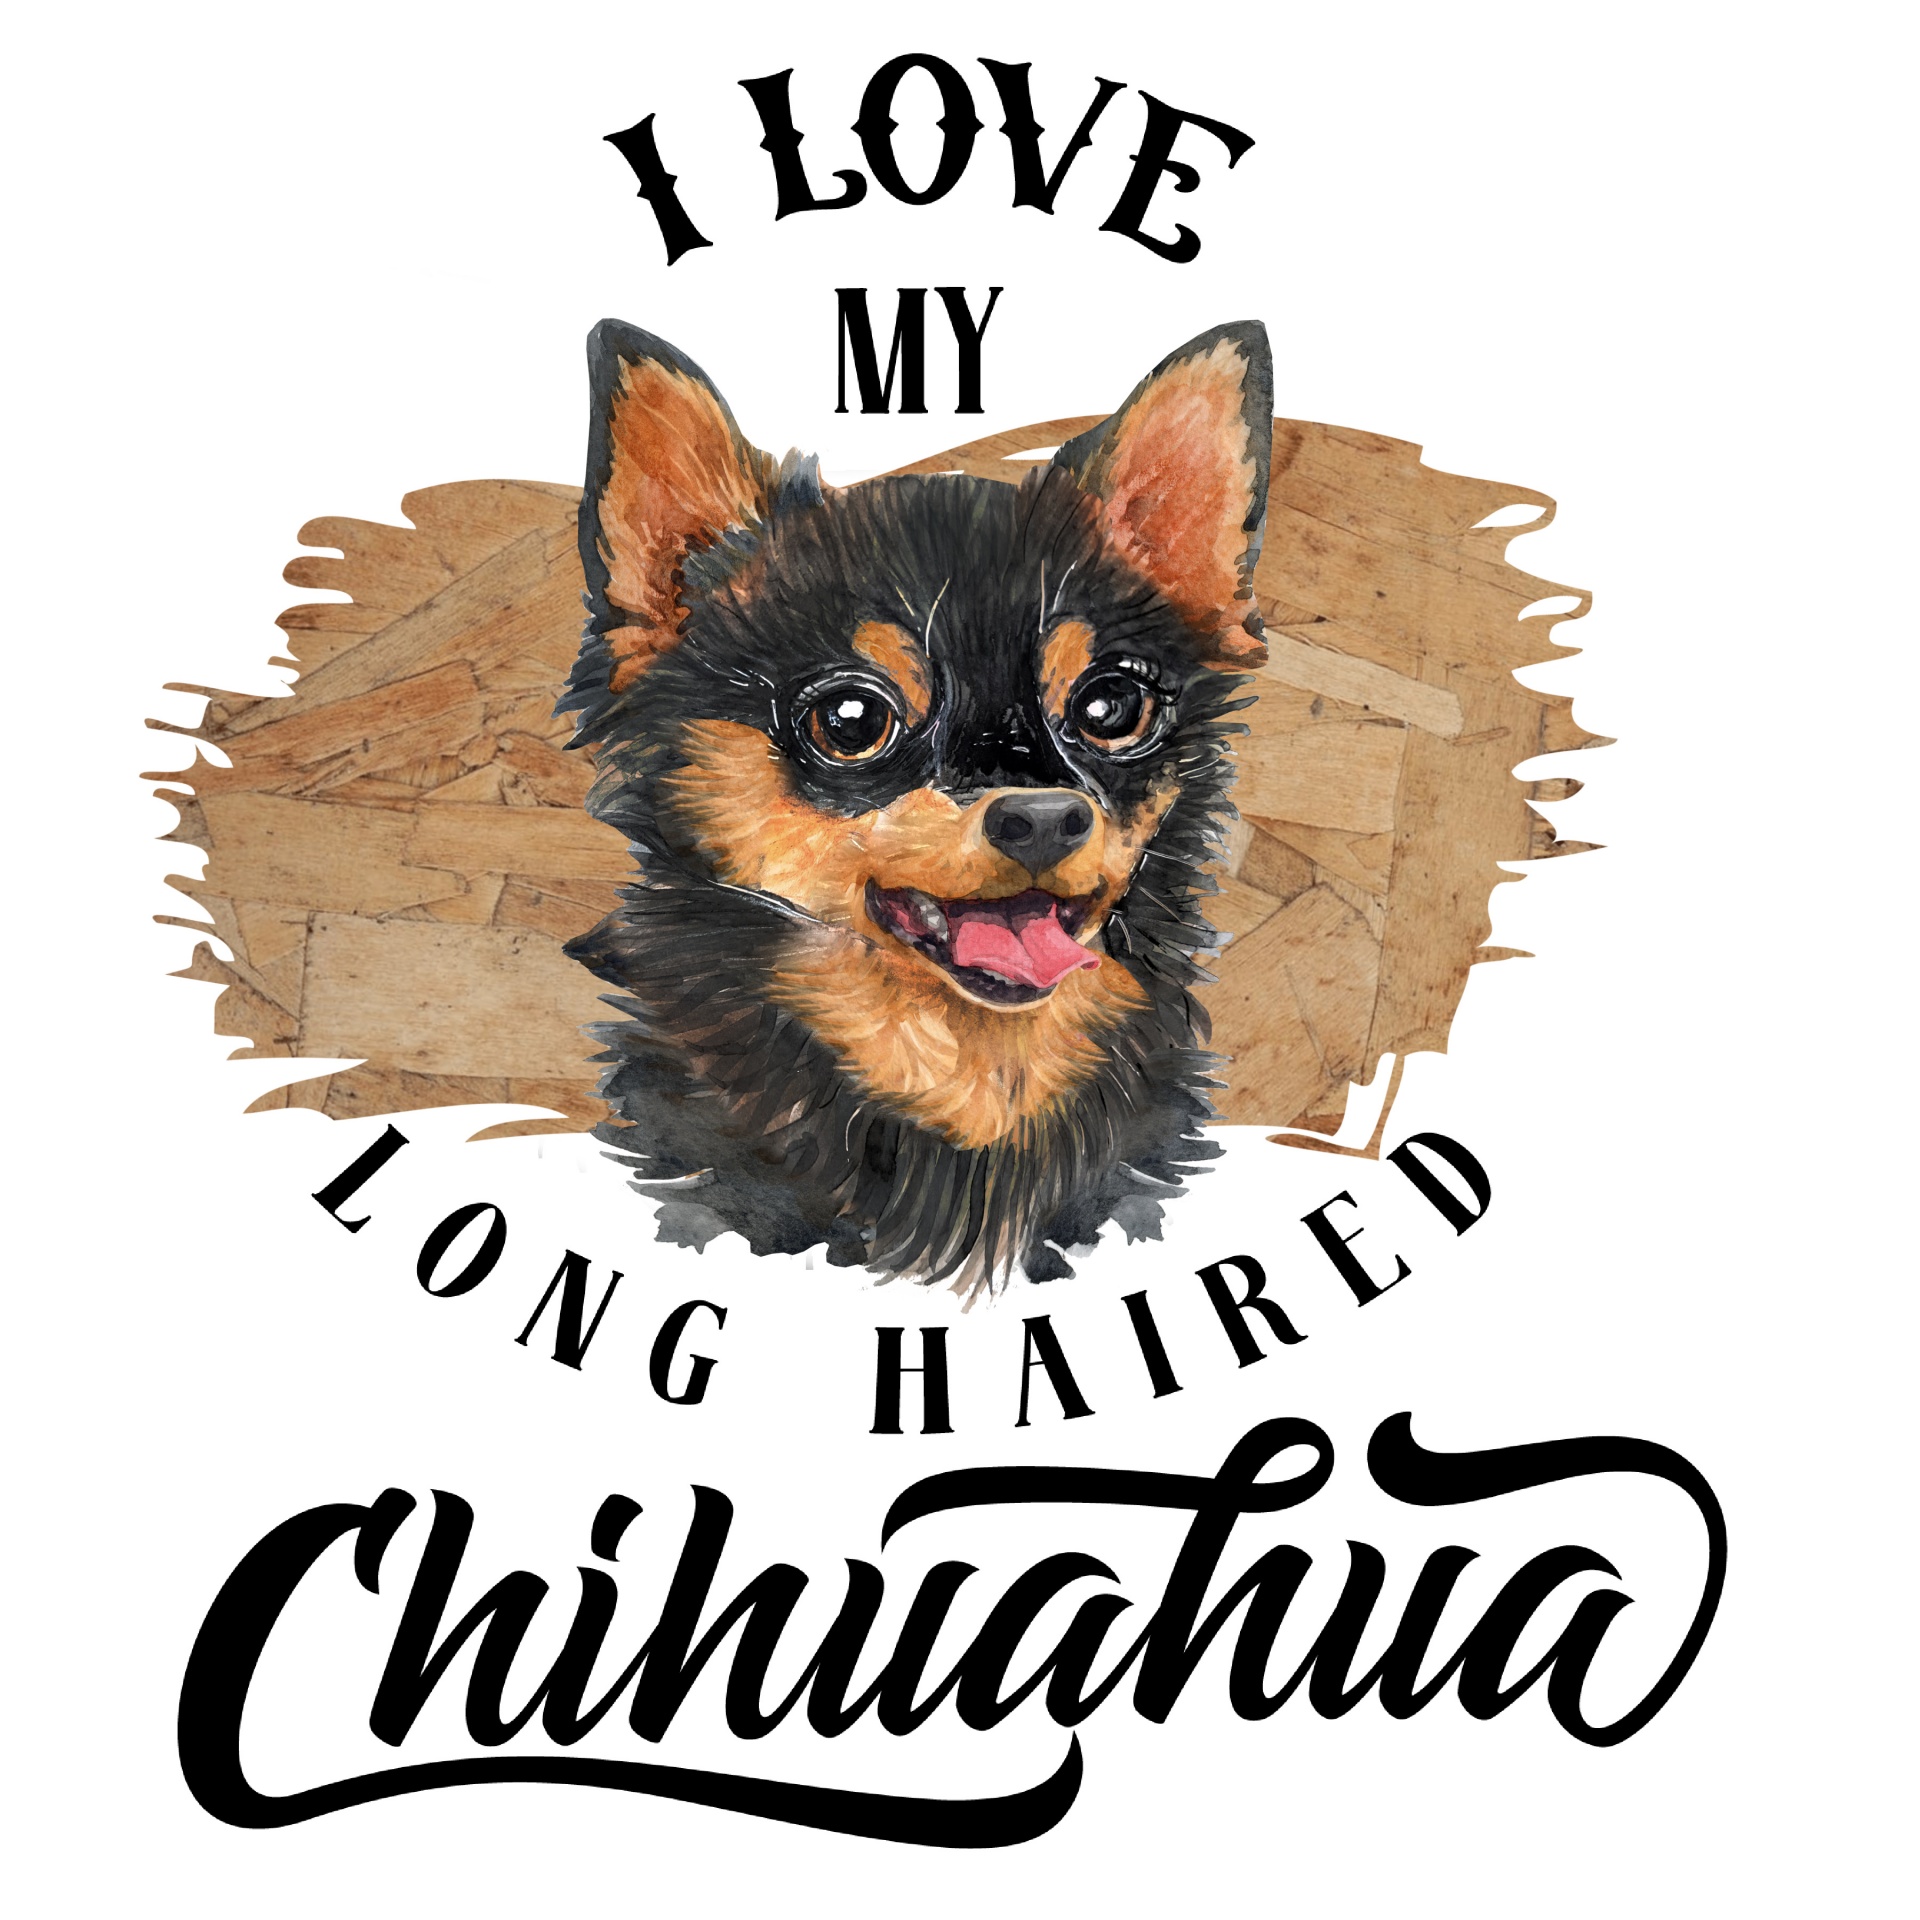 Chihuahua Dog Poster